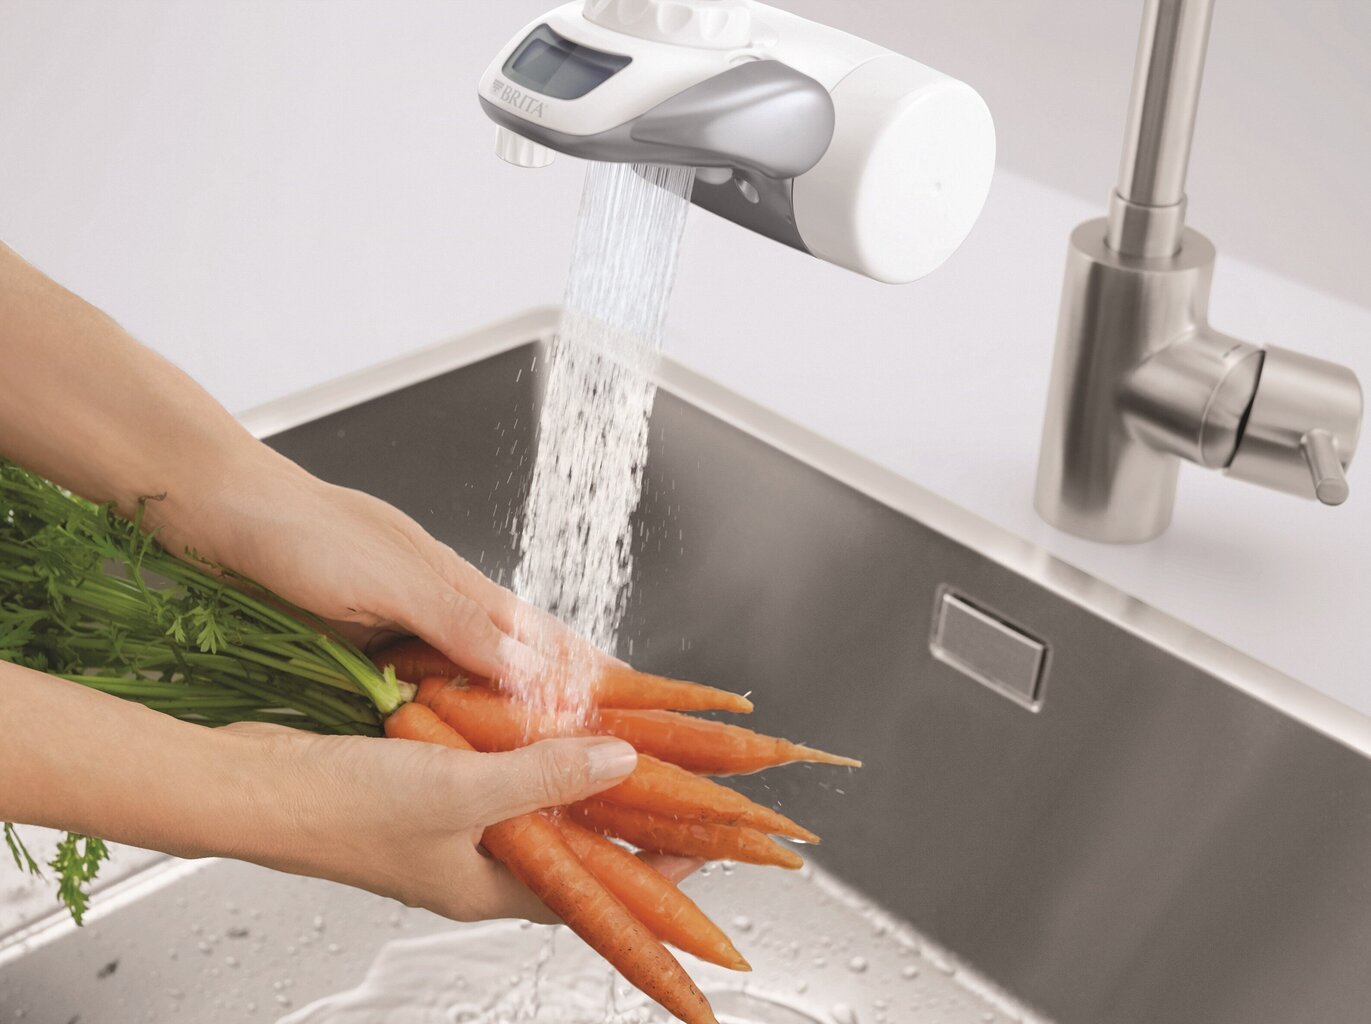 BRITA OnTap vandens filtravimo sistema 600L kaina ir informacija | Virtuvinių plautuvių ir maišytuvų priedai | pigu.lt